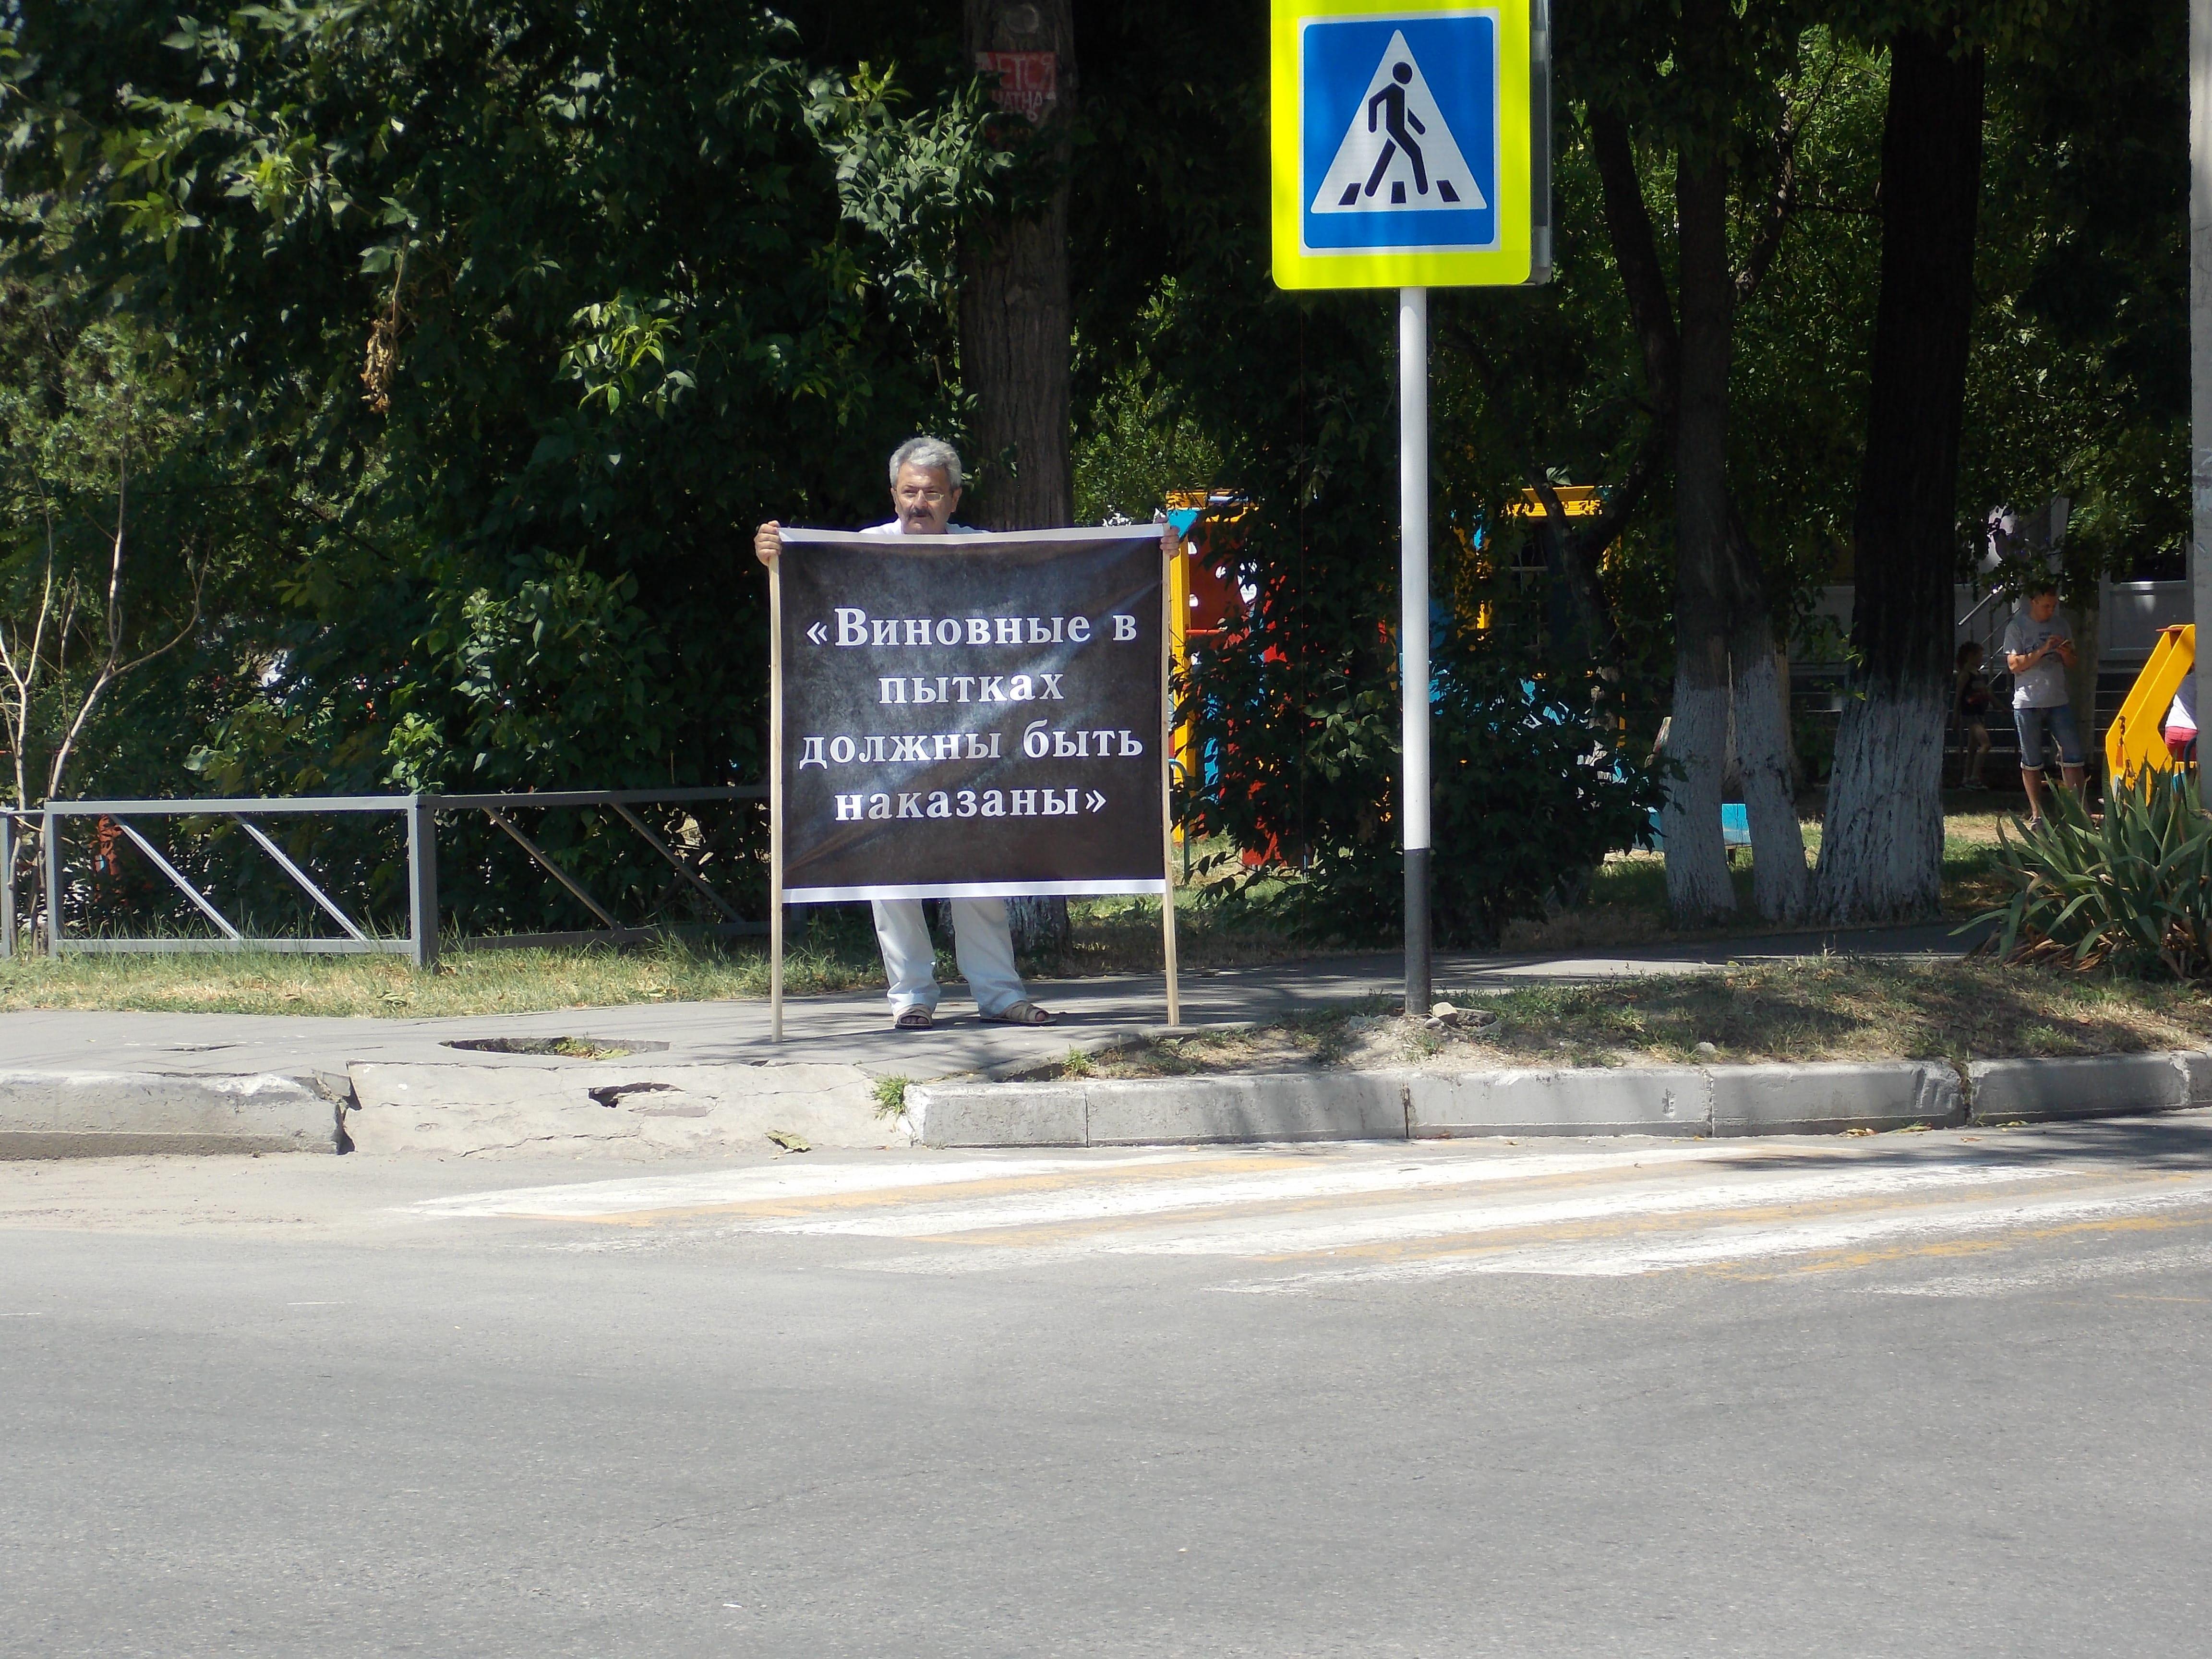 Самвел Арустамян проводит одиночный пикет в центре Анапы. Фото Анны Грицевич для "Кавказского узла"